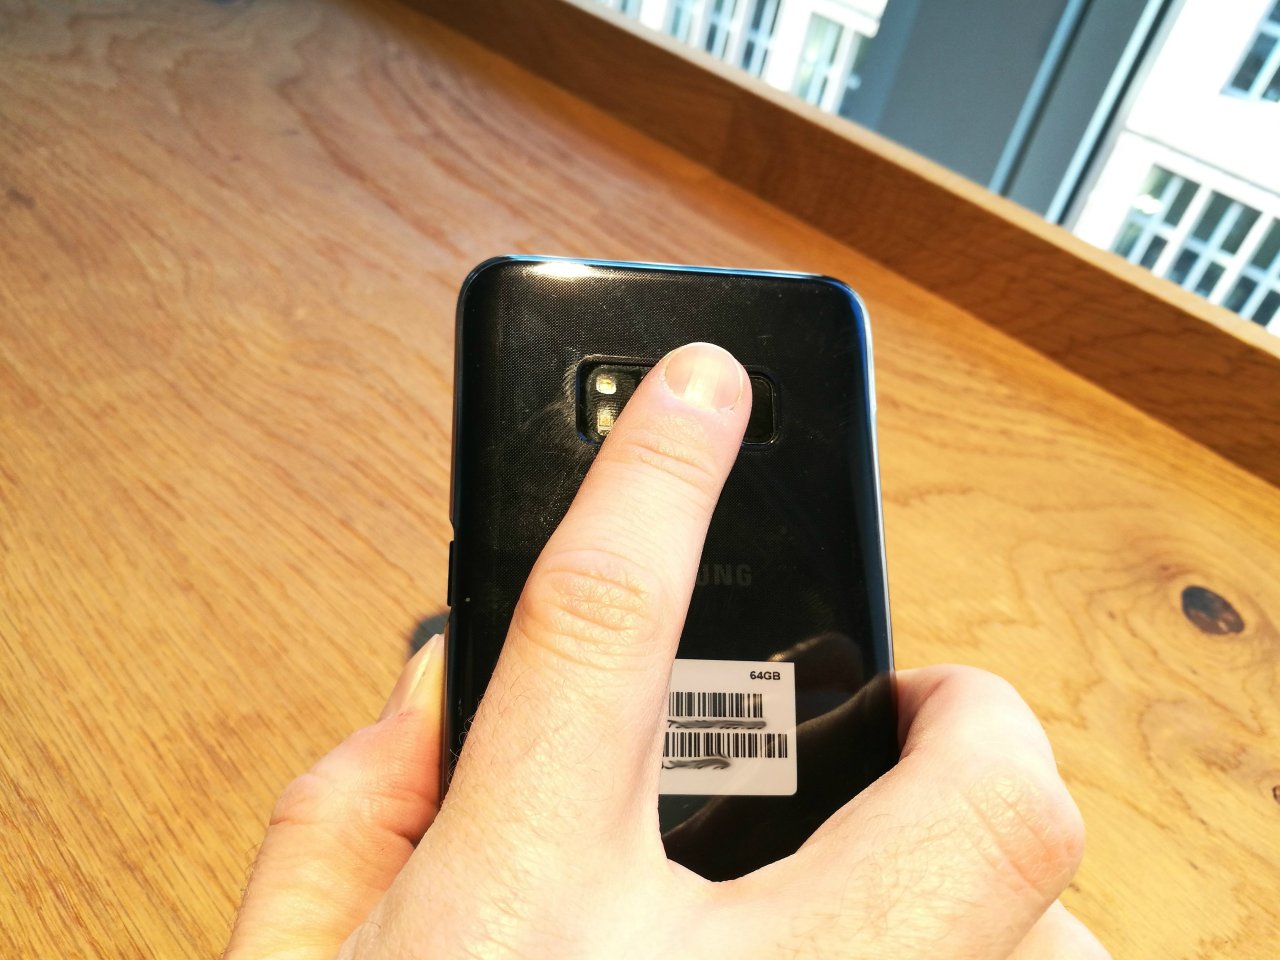 Kamera und Fingerabdrucksensor sind nebeneinander platziert. Deswegen landet der Finger beim Entsperren oft auf der Linse, anstatt auf dem Erkennungssensor.